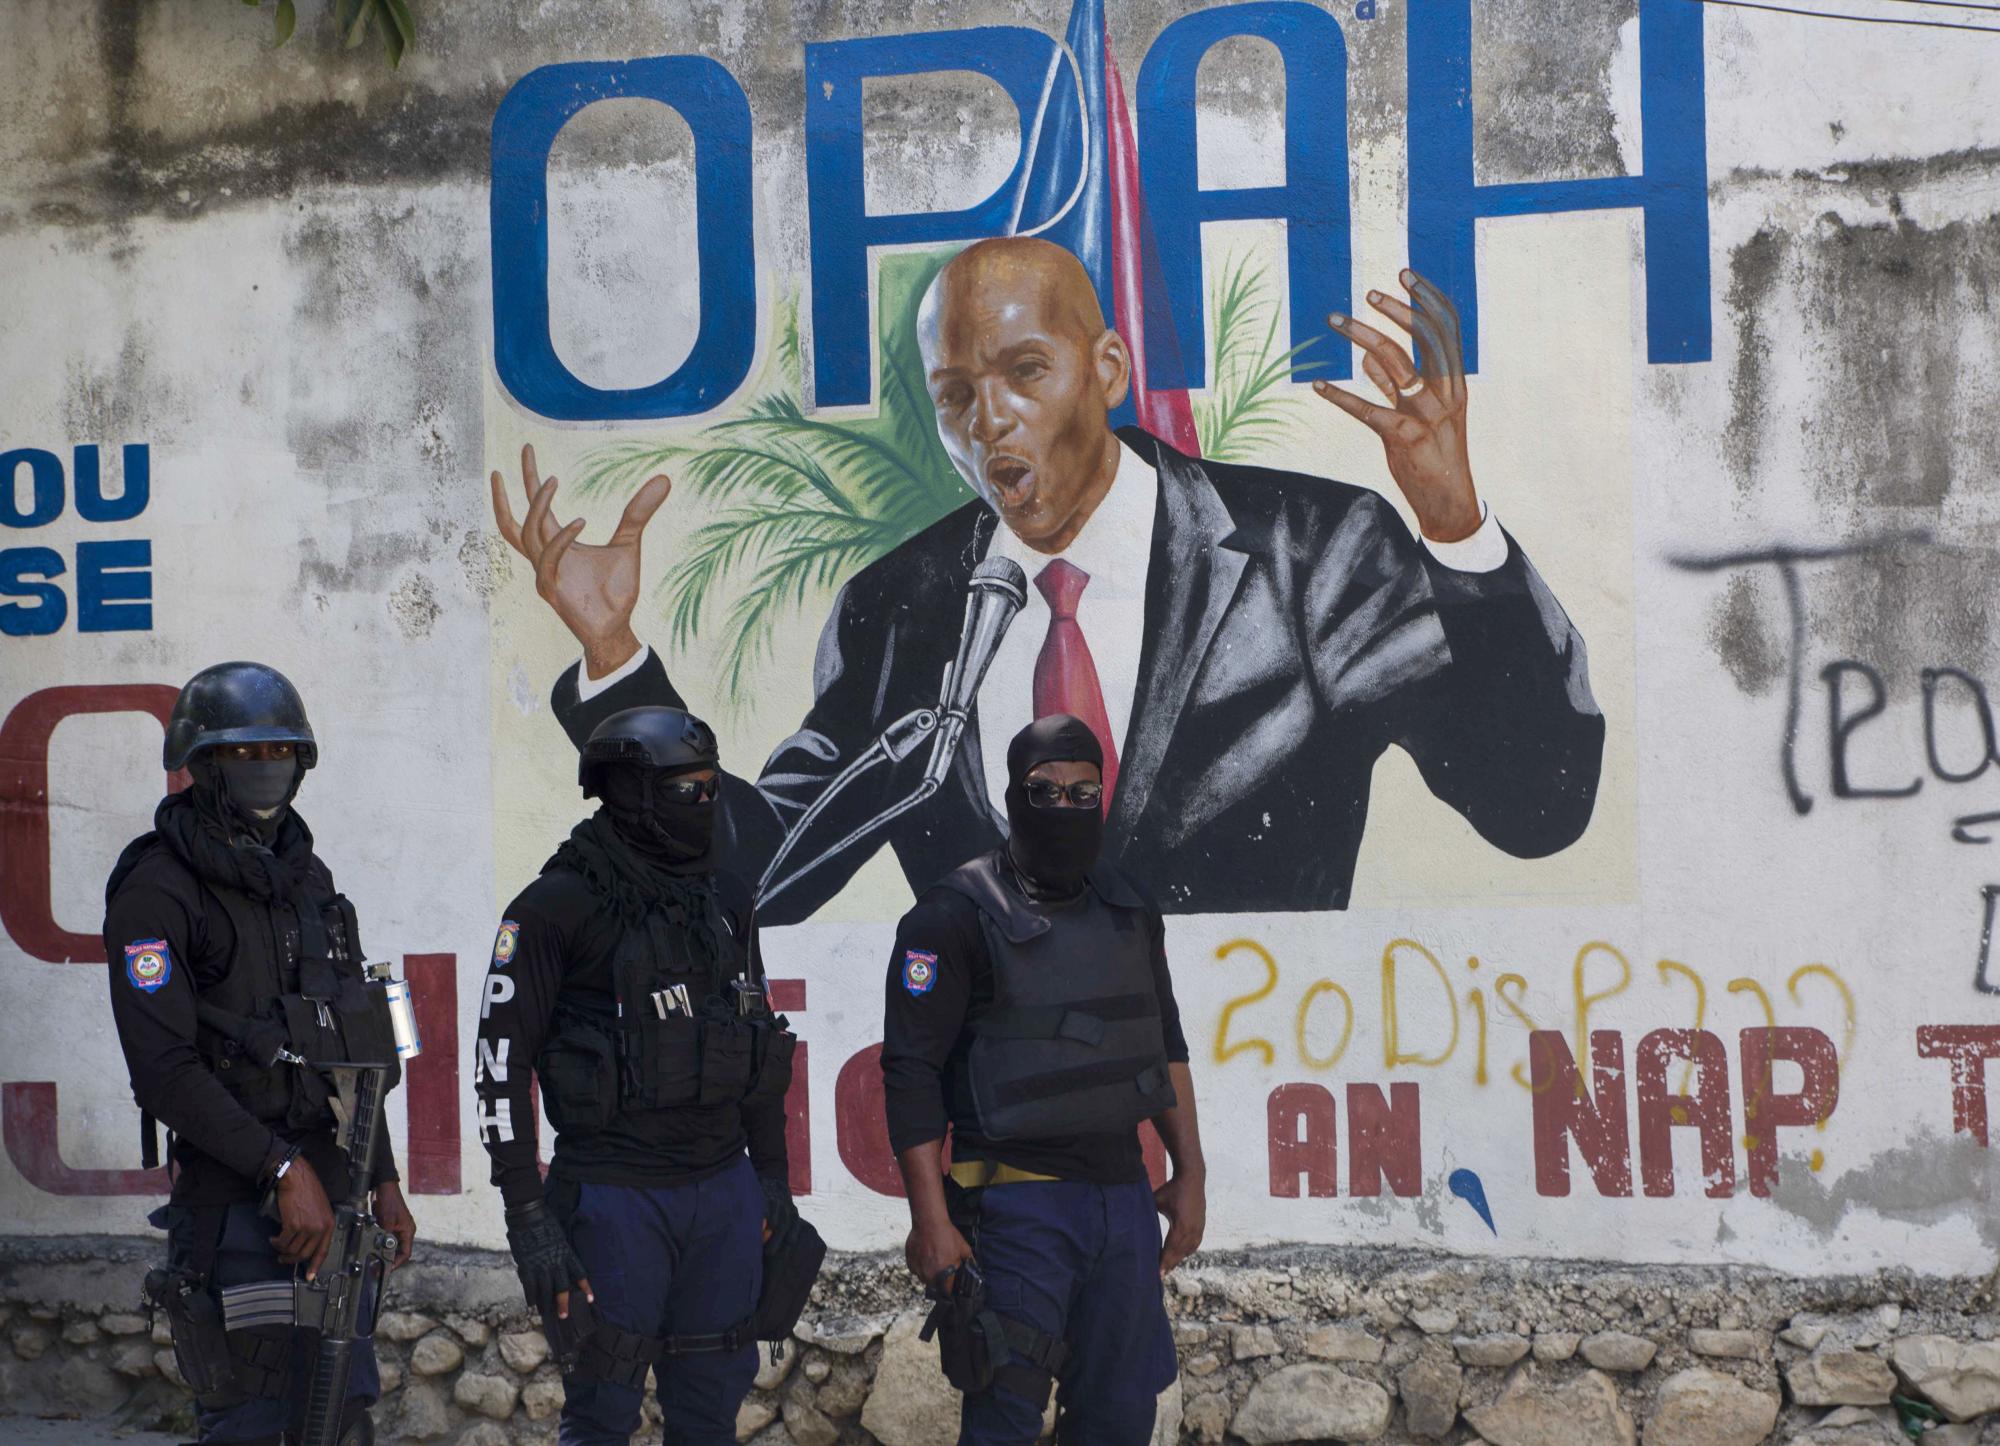 La policía se para cerca de un mural que muestra al presidente haitiano Jovenel Moise, cerca de la residencia del líder donde fue asesinado por hombres armados en las primeras horas de la mañana en Port-au-Prince, Haití, el miércoles 7 de julio de 2021. (AP Photo / Joseph Odelyn)